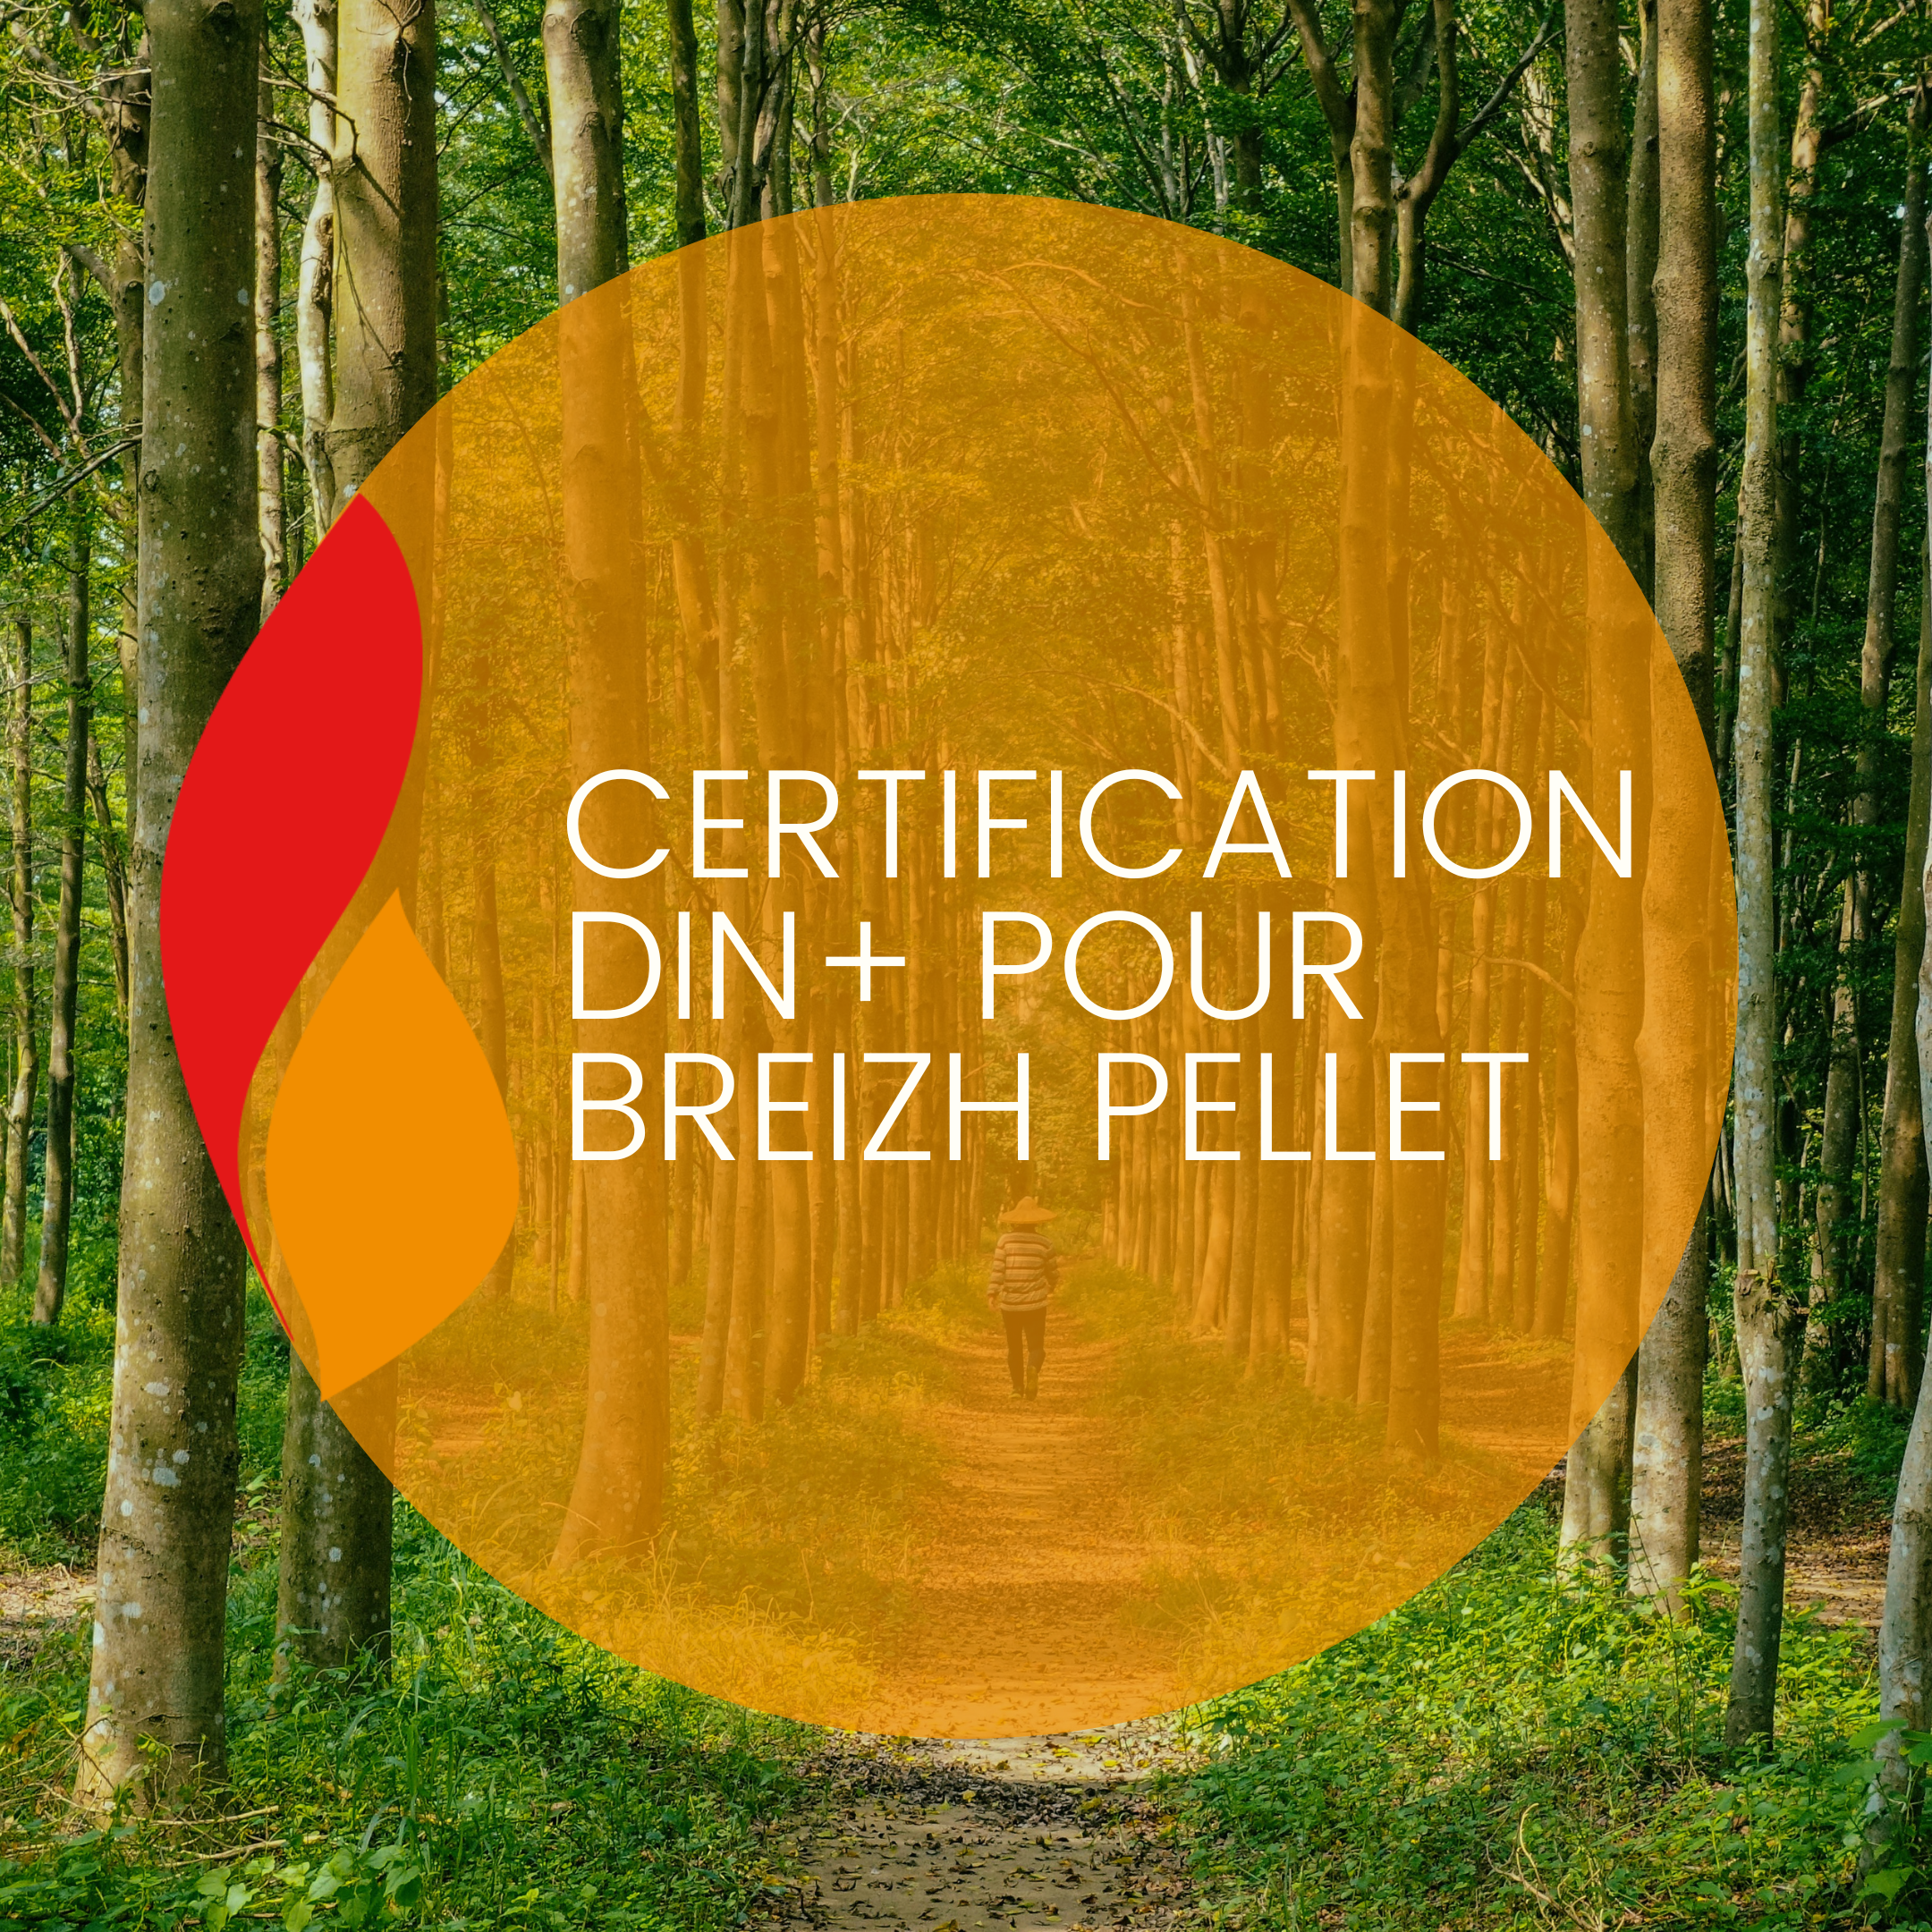 Lire la suite à propos de l’article Certification DIN+ pour Breizh Pellet